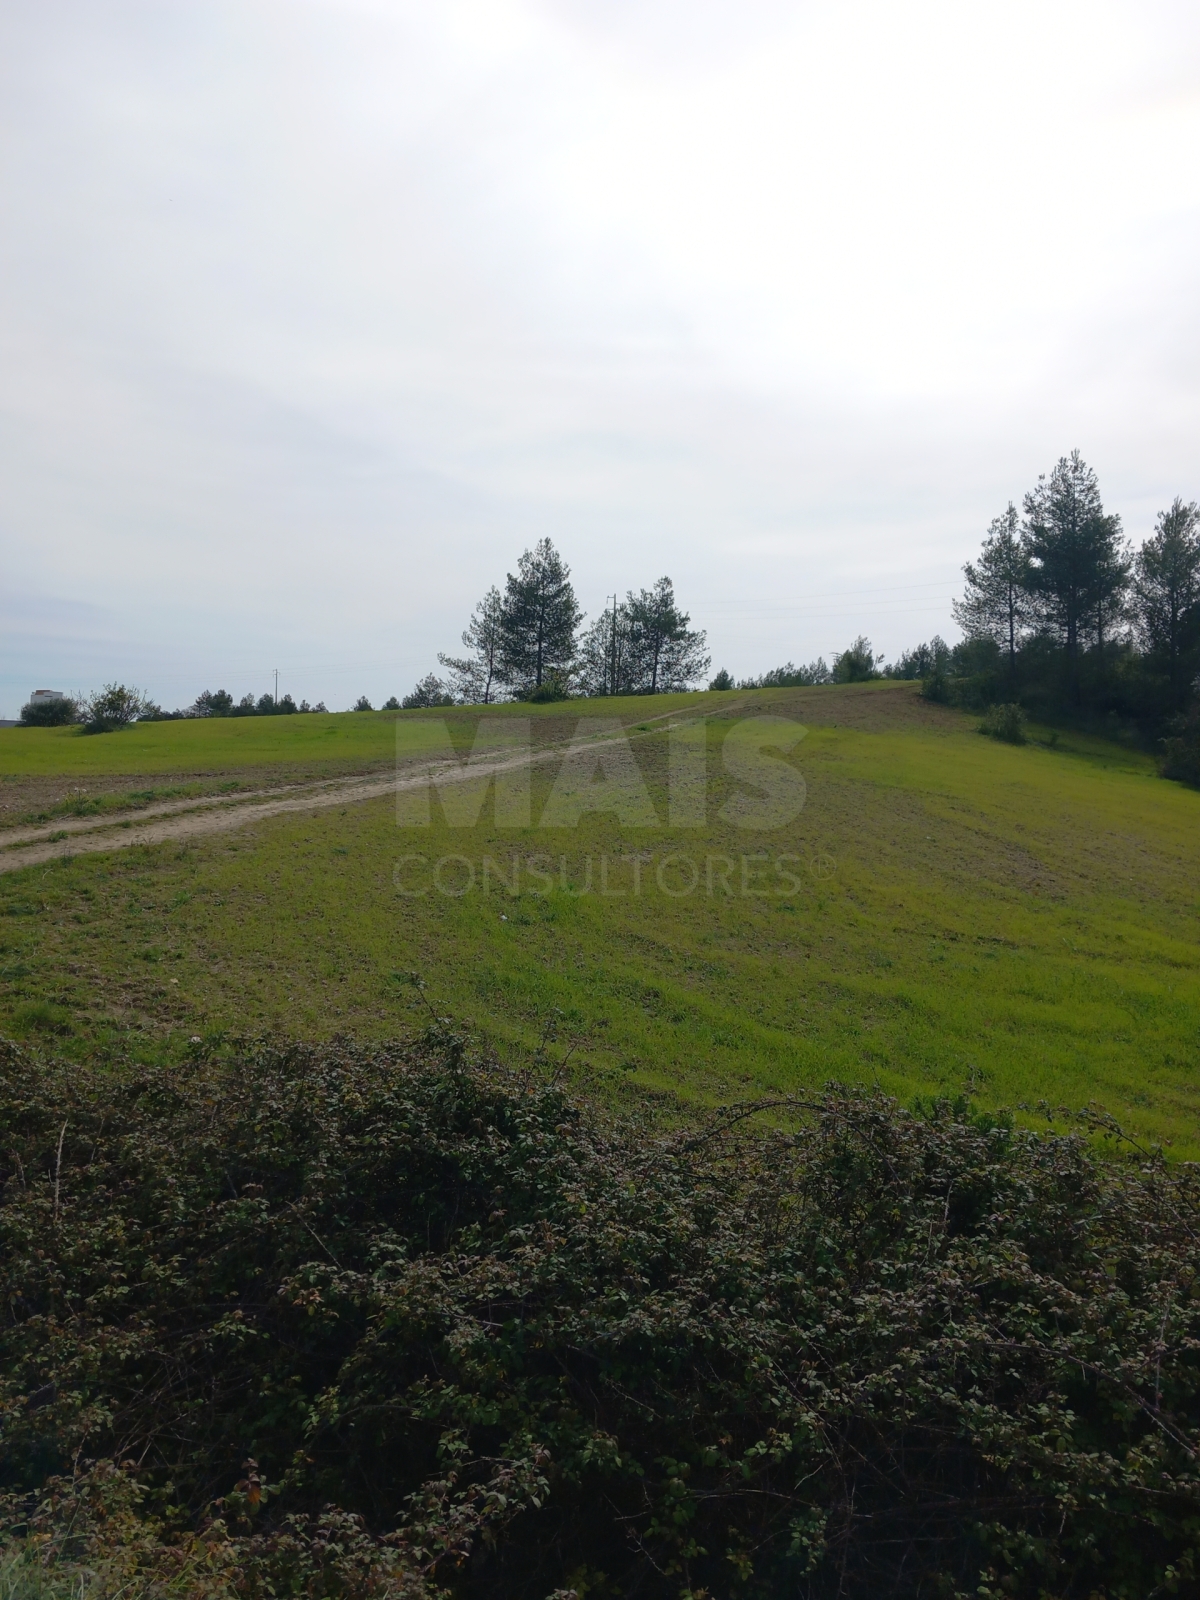 Terreno rústico 20,54 hectares na Olaia - Torres Novas